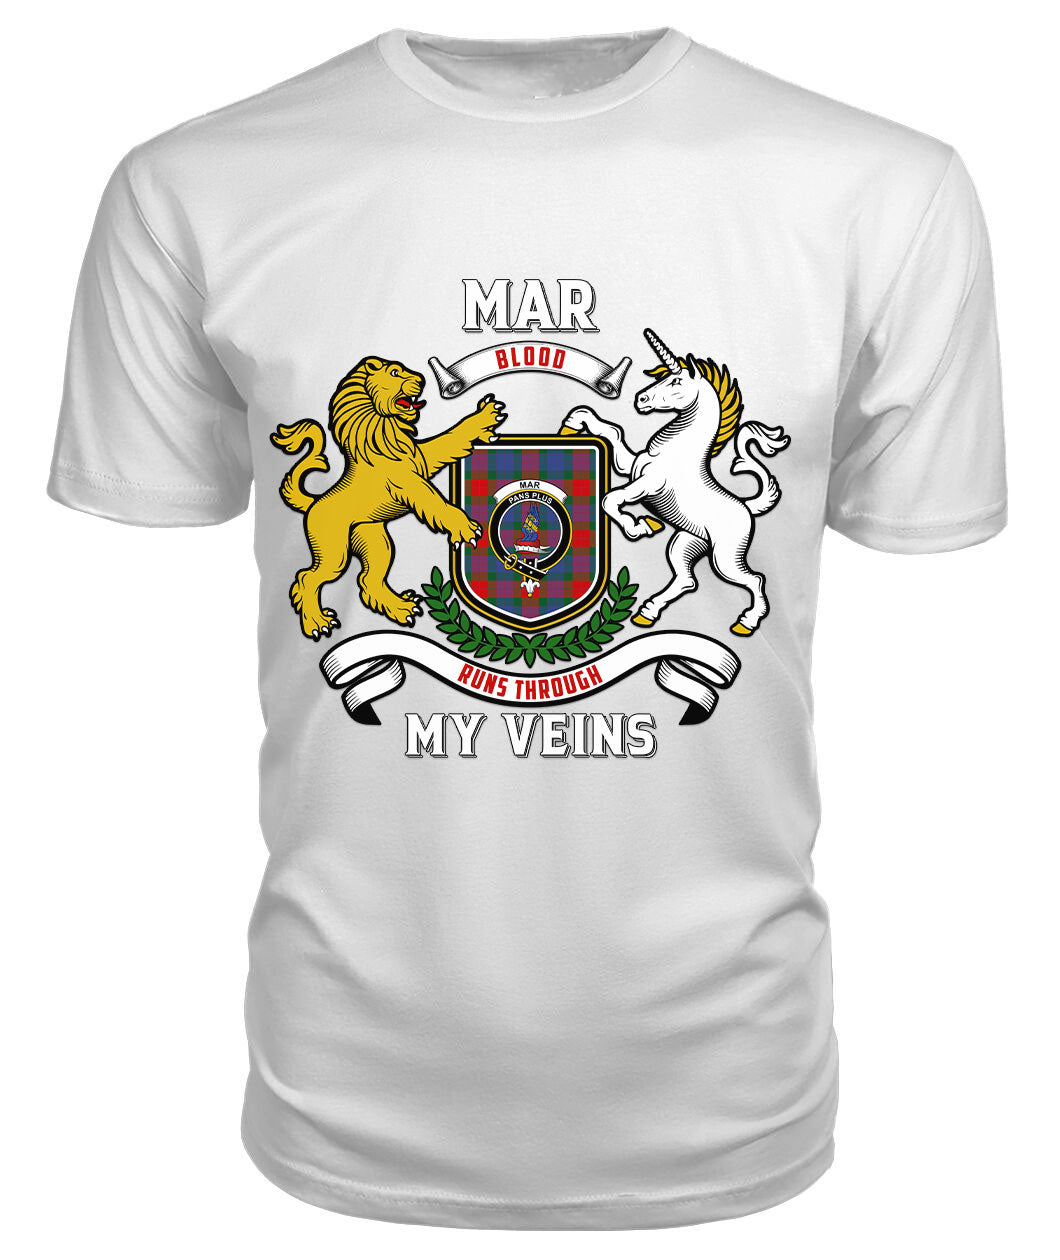 Mar Tartan Crest 2D T-shirt - Blood Runs Through My Veins Style